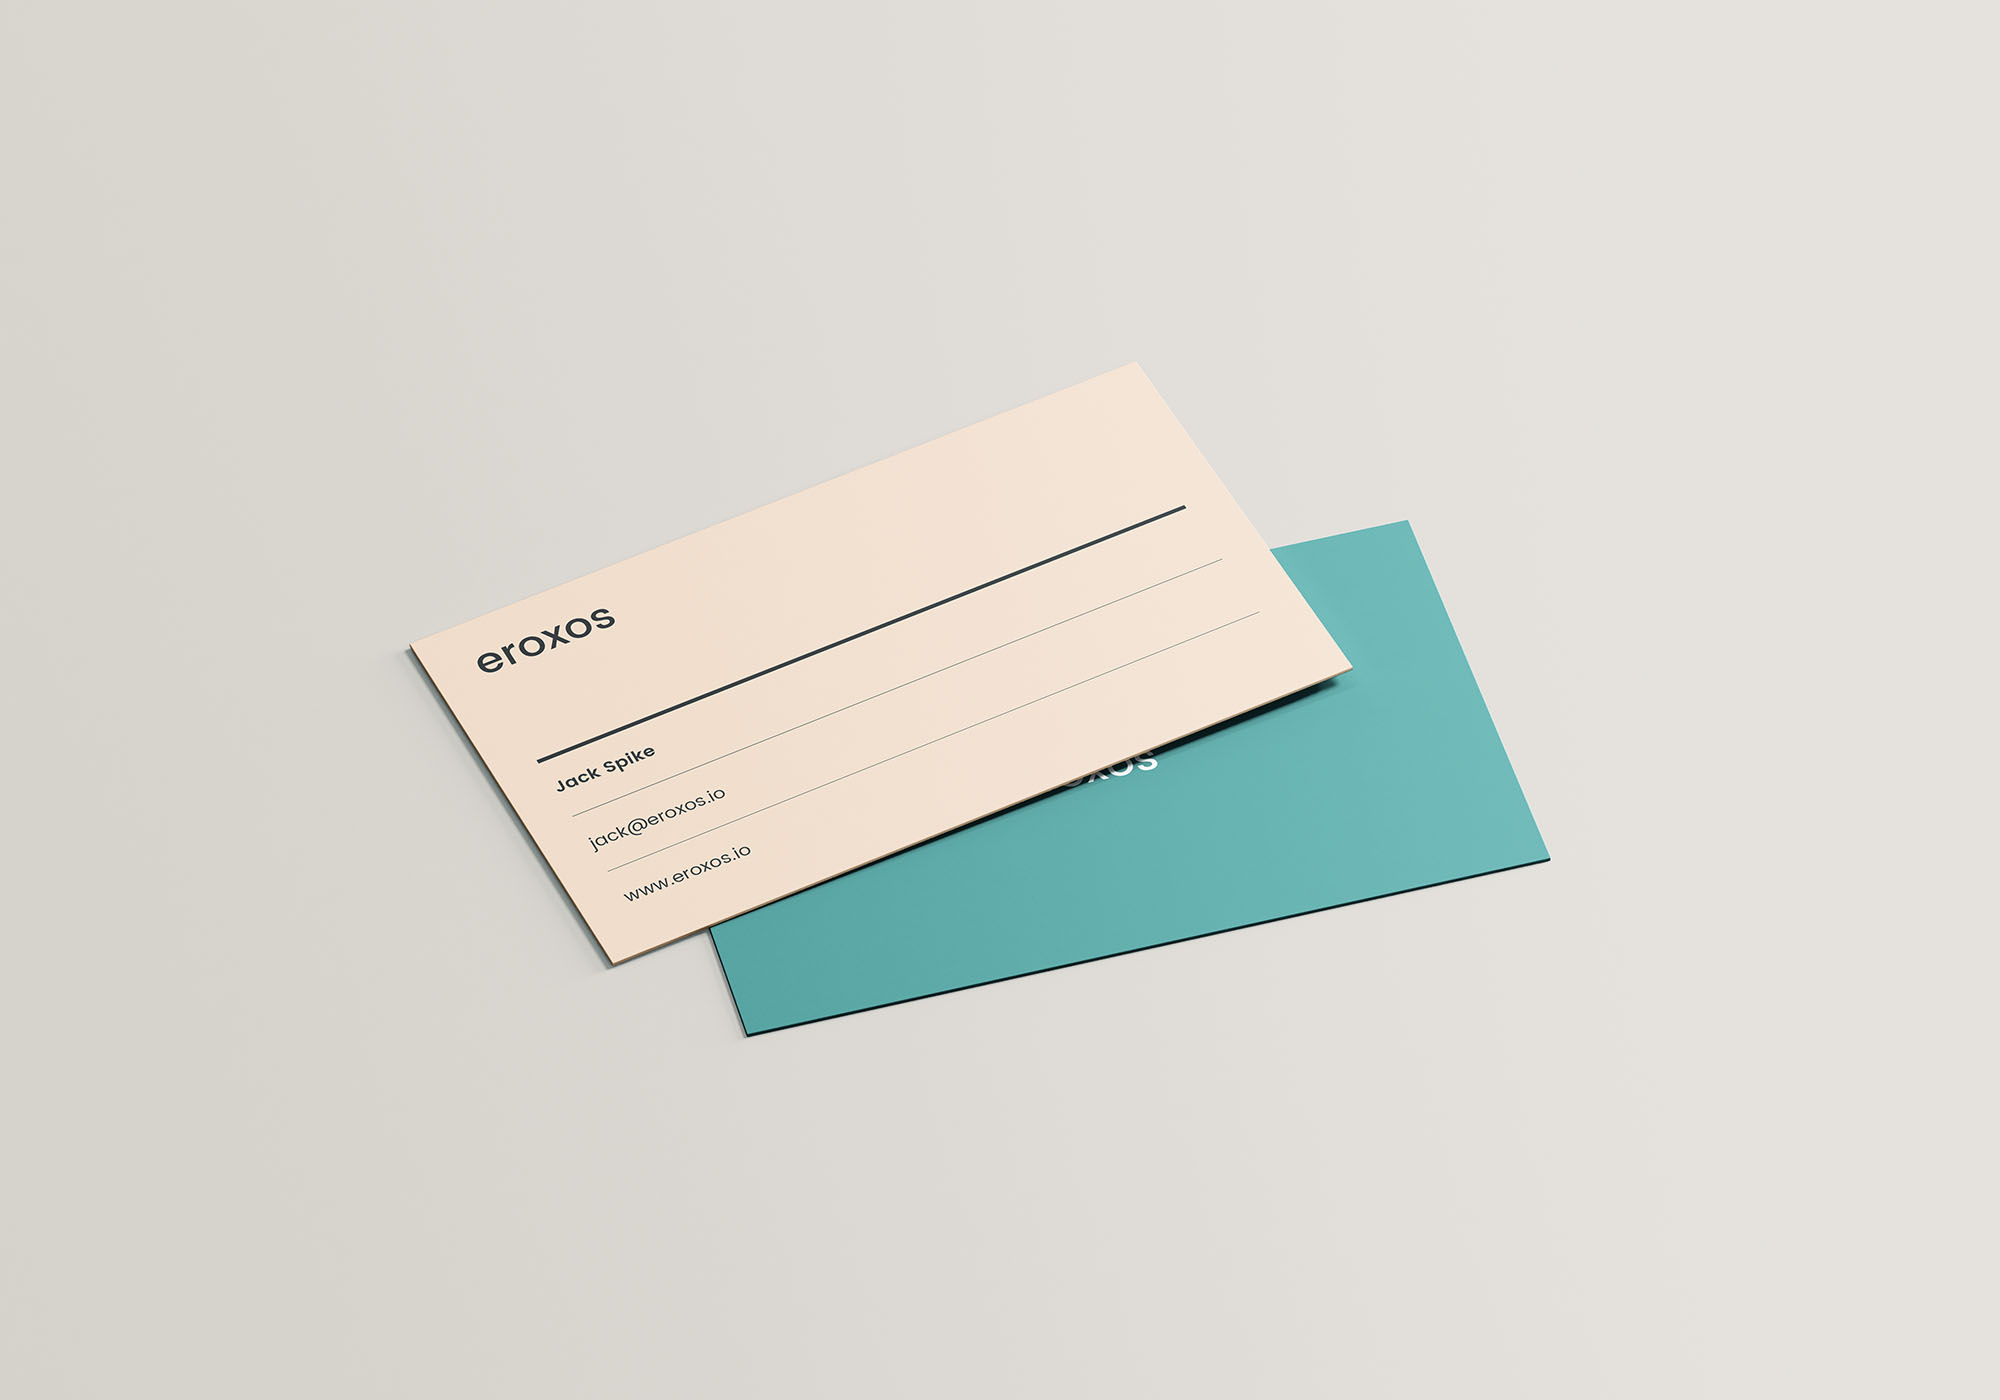 极简设计风格企业名片设计效果图素材库精选 Multipurpose Cards Mockup插图